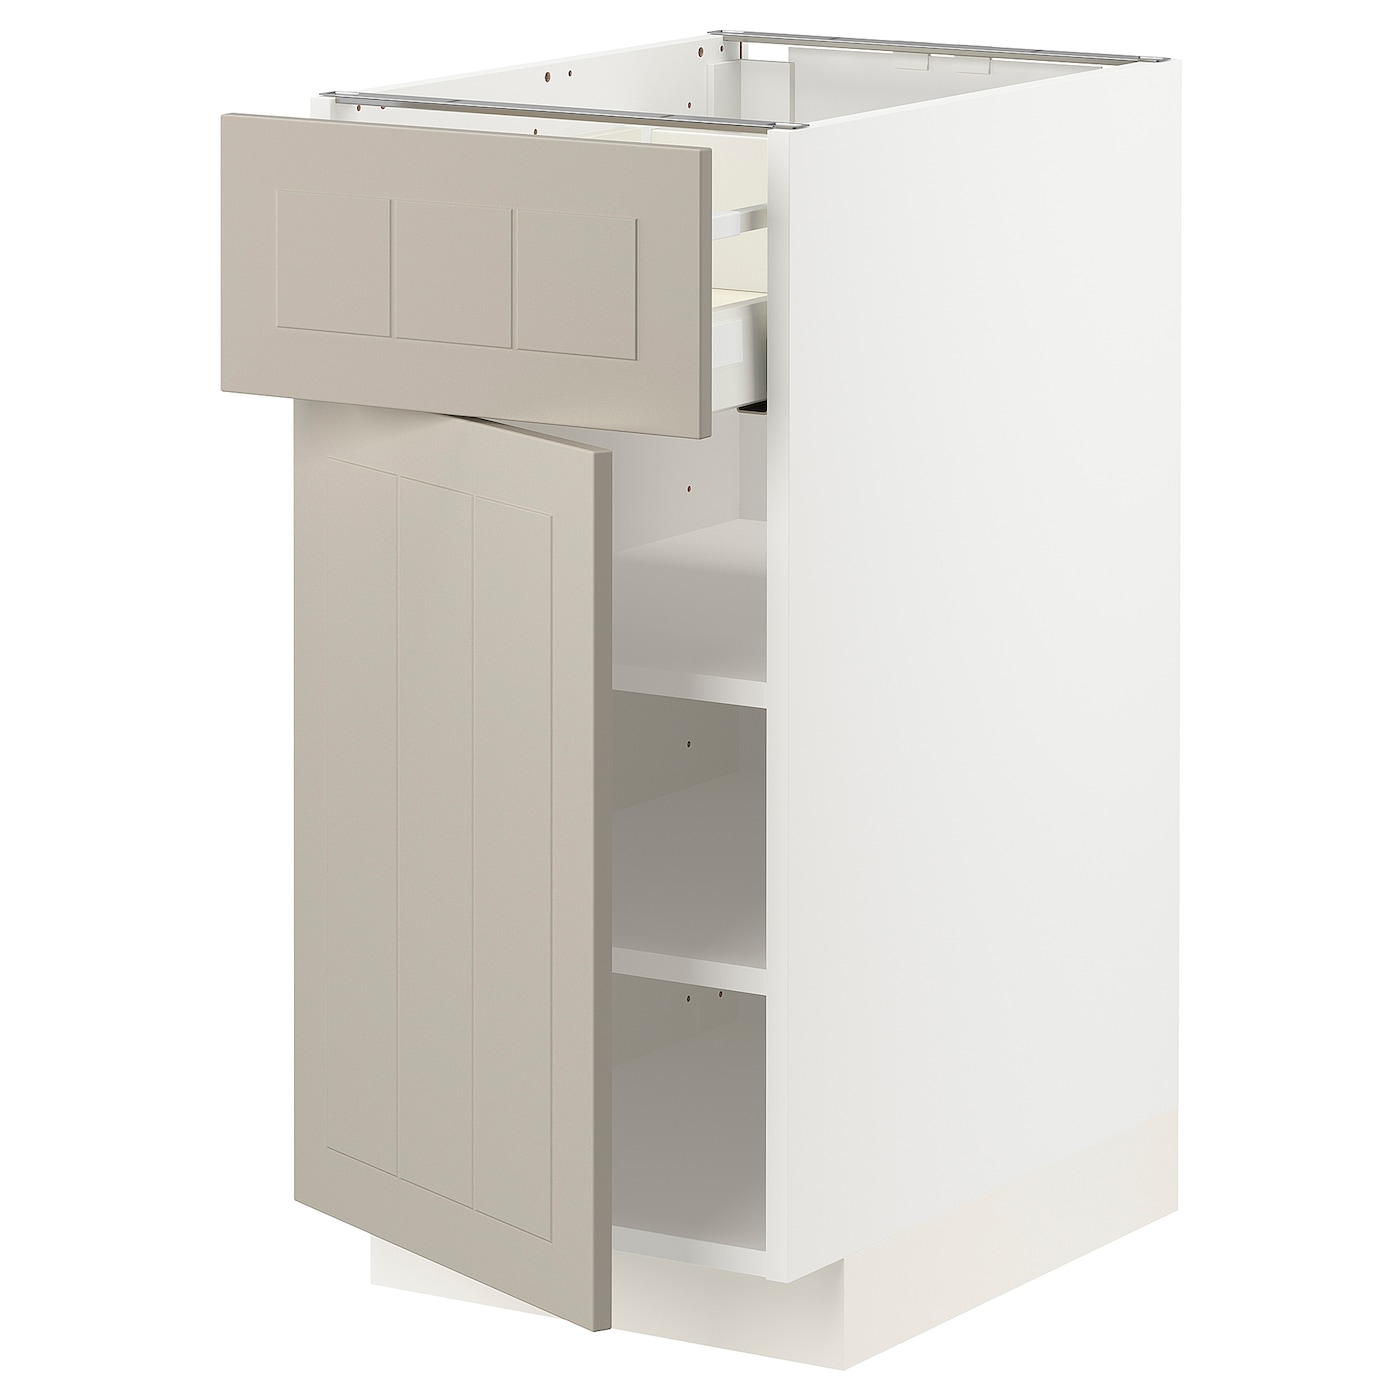 Напольный кухонный шкаф  - IKEA METOD MAXIMERA, 88x62x40см, белый/бежевый, МЕТОД МАКСИМЕРА ИКЕА